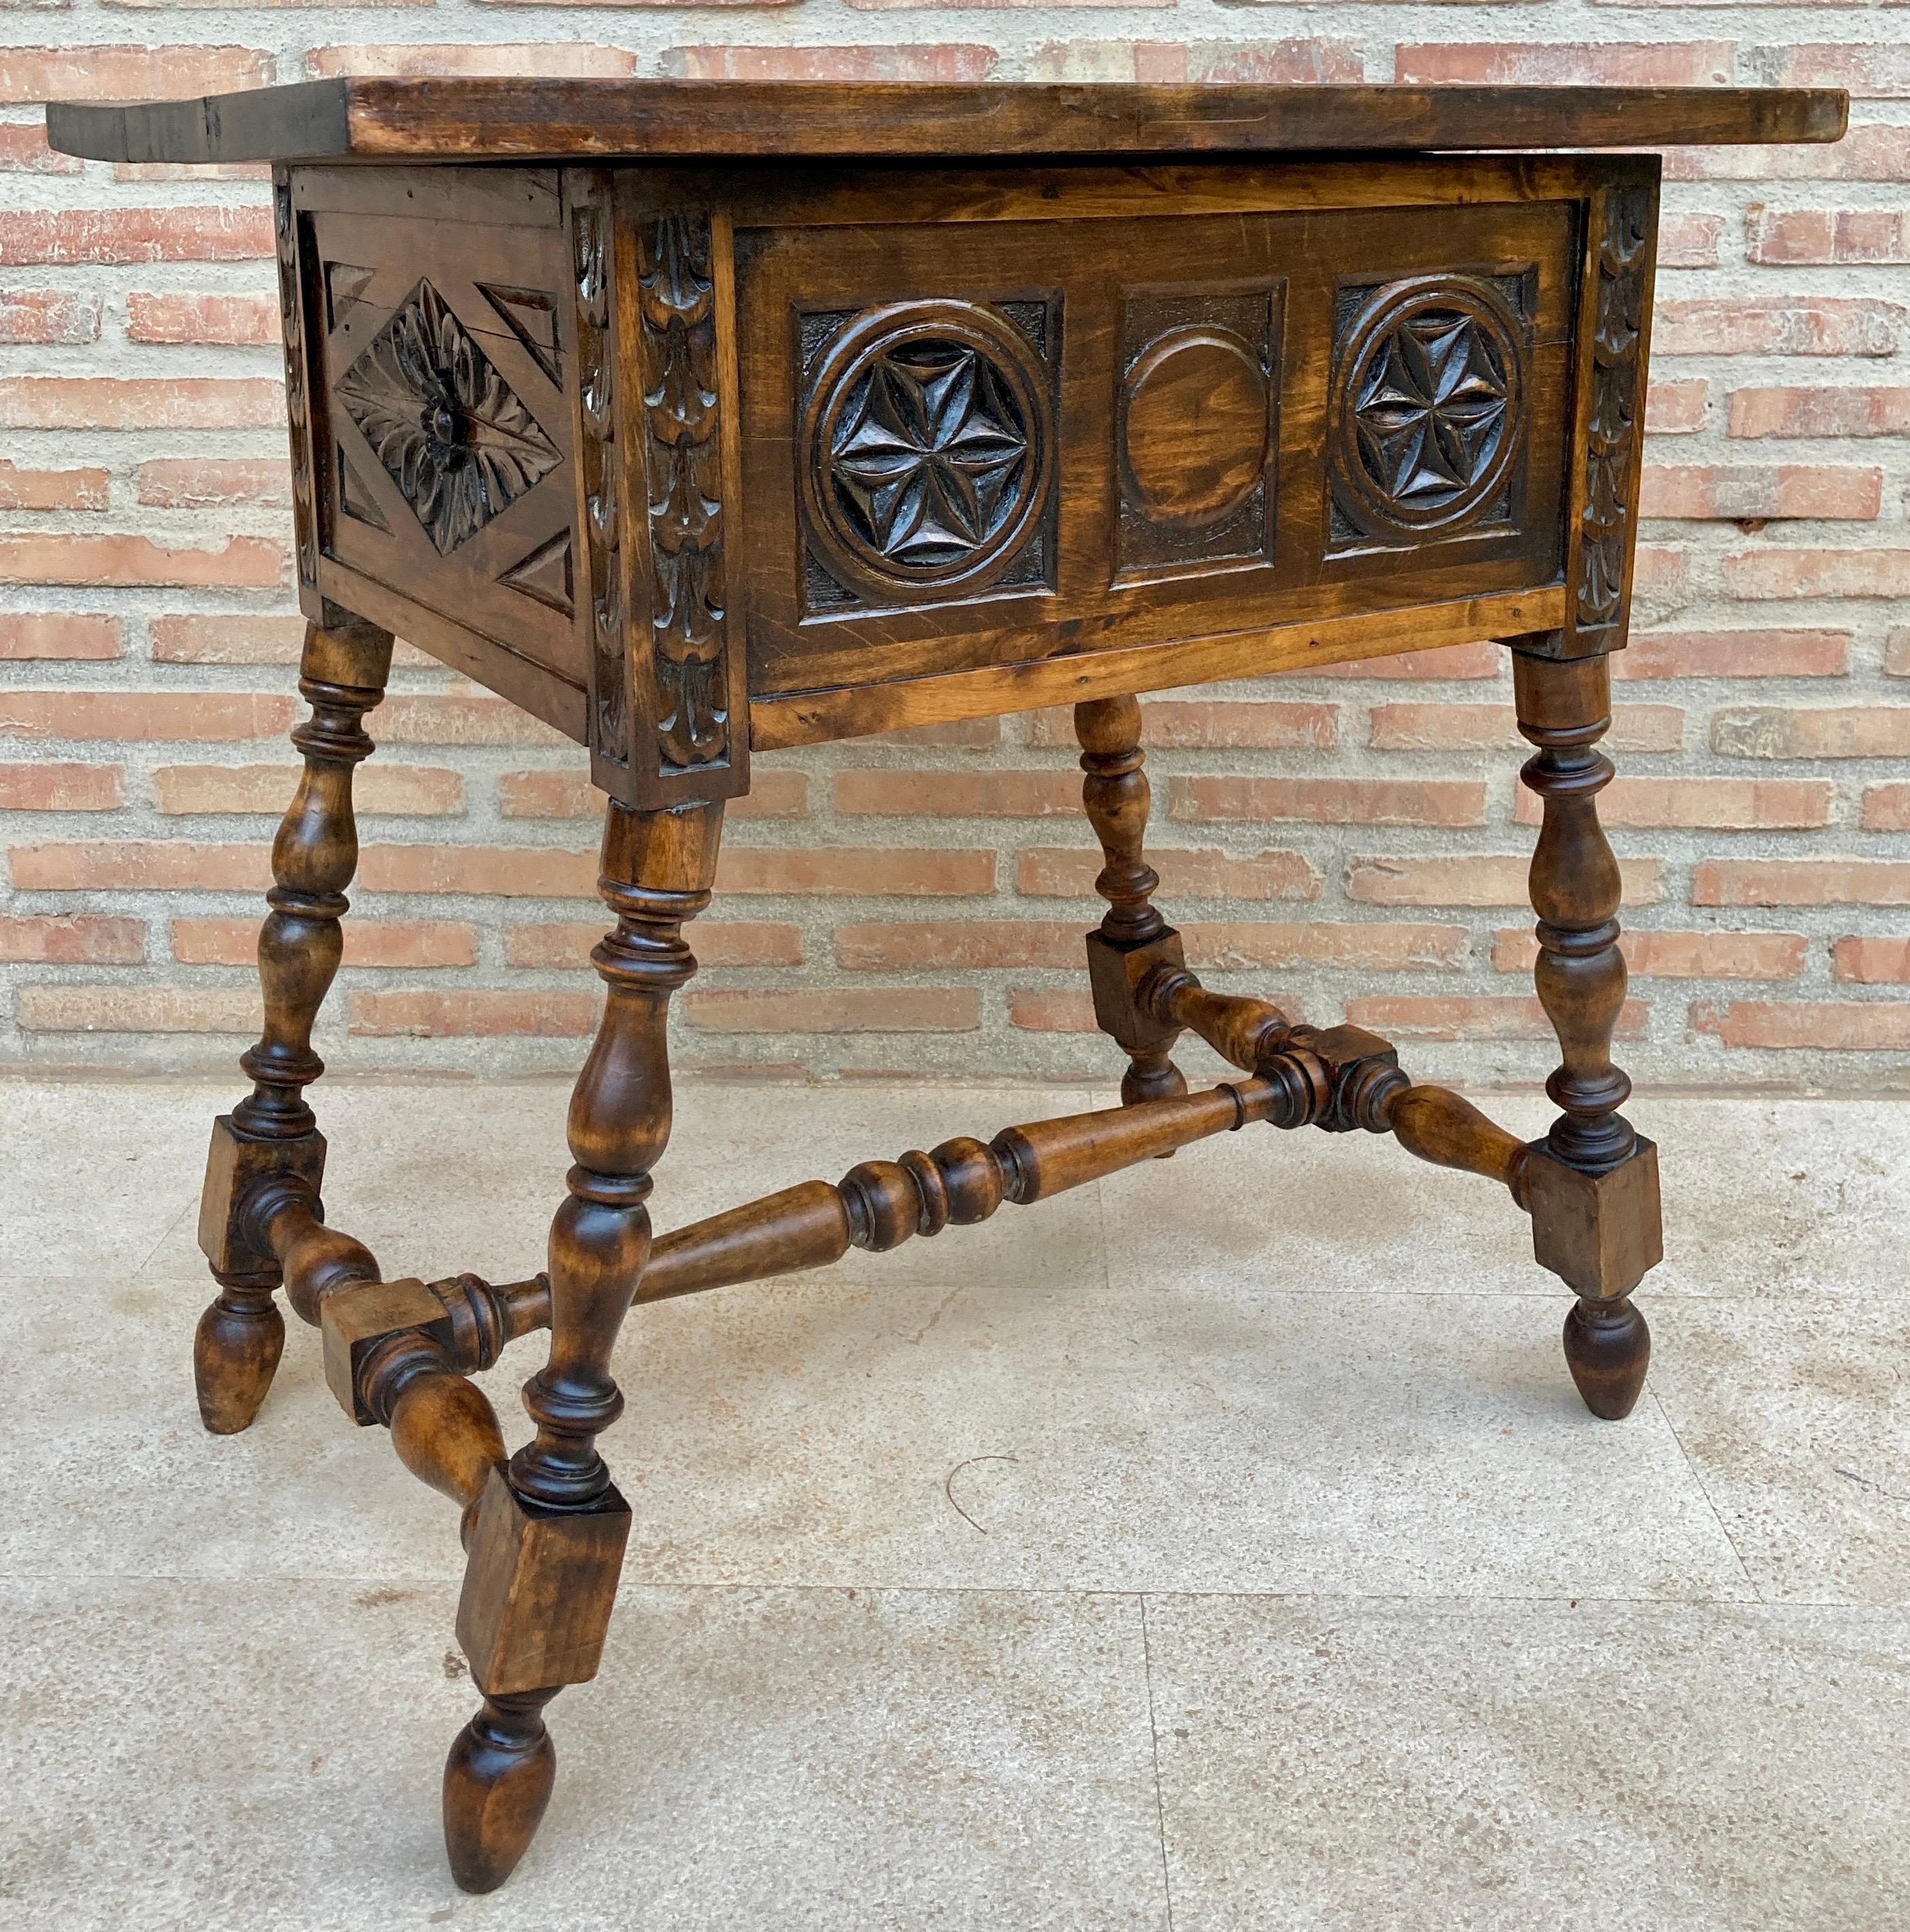 Schöner Schreibtisch oder Beistelltisch aus Nussbaum aus dem 19. Jahrhundert, spanischer Barock, mit geschnitzter Struktur, solomonischen Beinen und einer Schublade.
Sein exquisiter Stil verleiht dem Raum im Haus, in dem er aufgestellt wird, eine